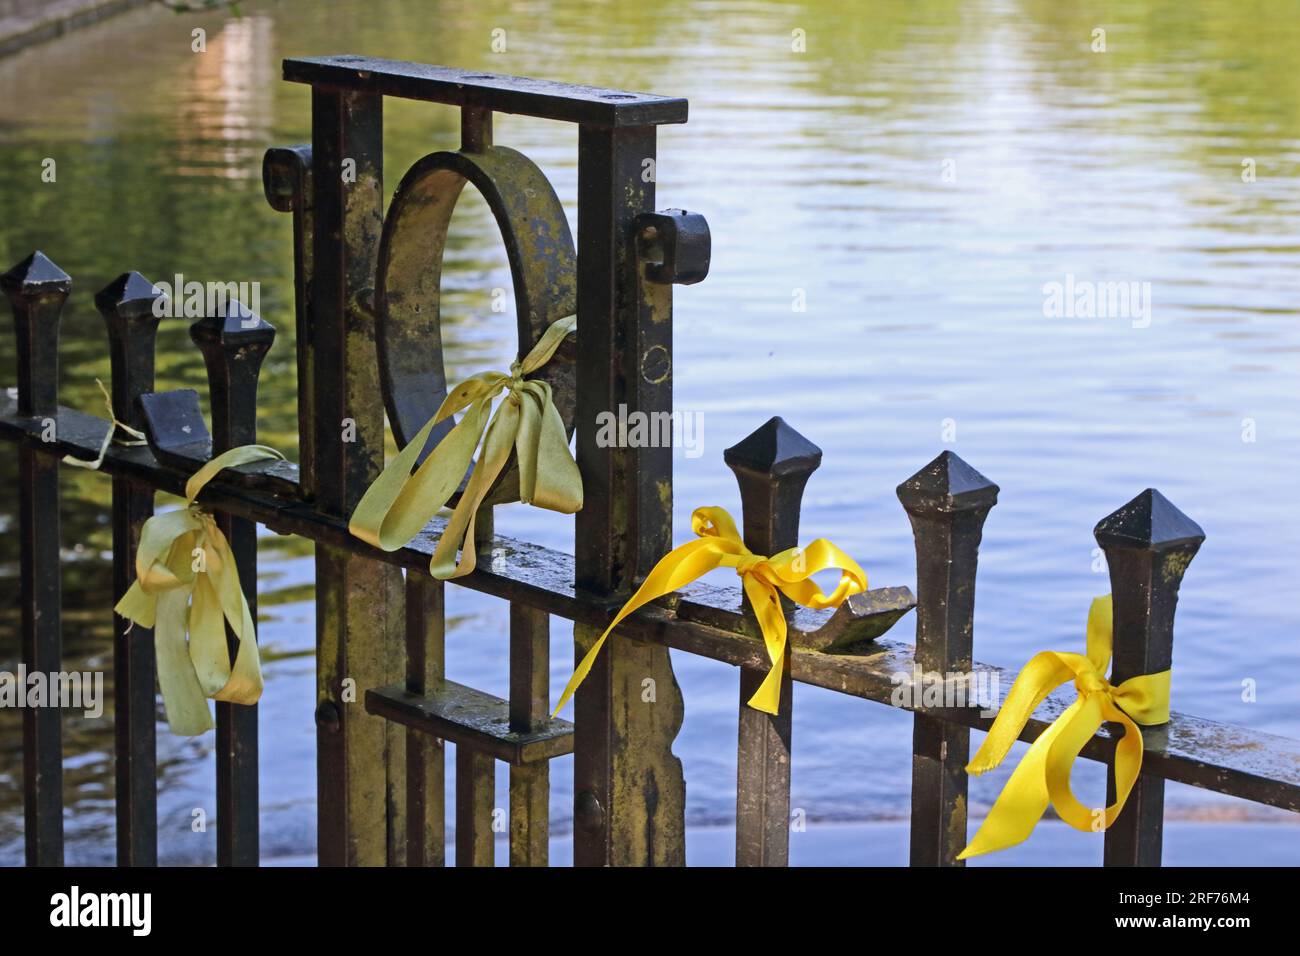 Rubans jaunes attachés à une clôture métallique, symbole de sensibilisation à la prévention du suicide Banque D'Images